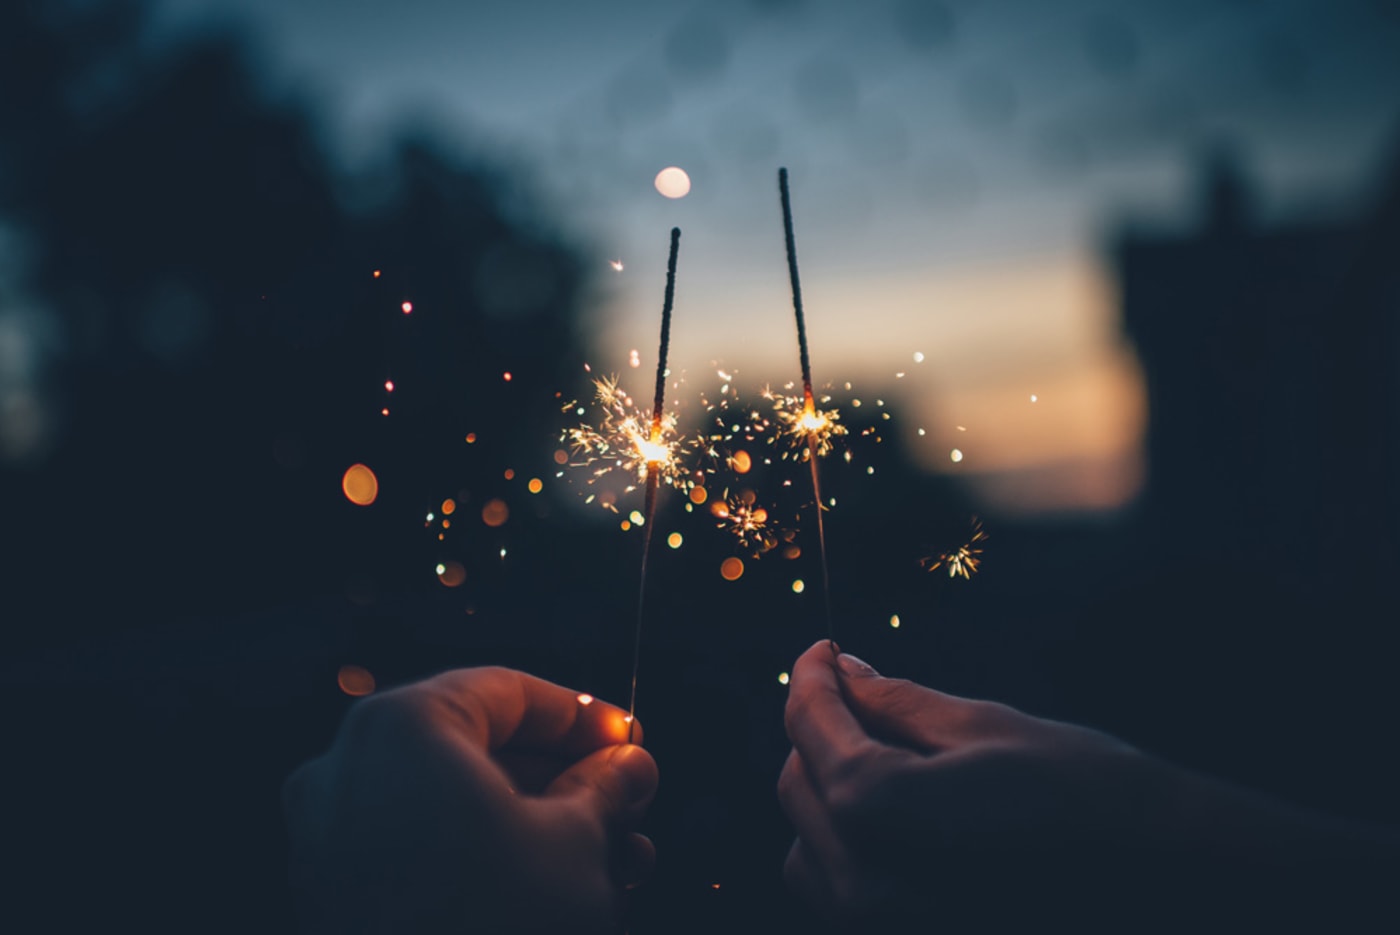 New years sparklers by Ian Schneider on Unsplash